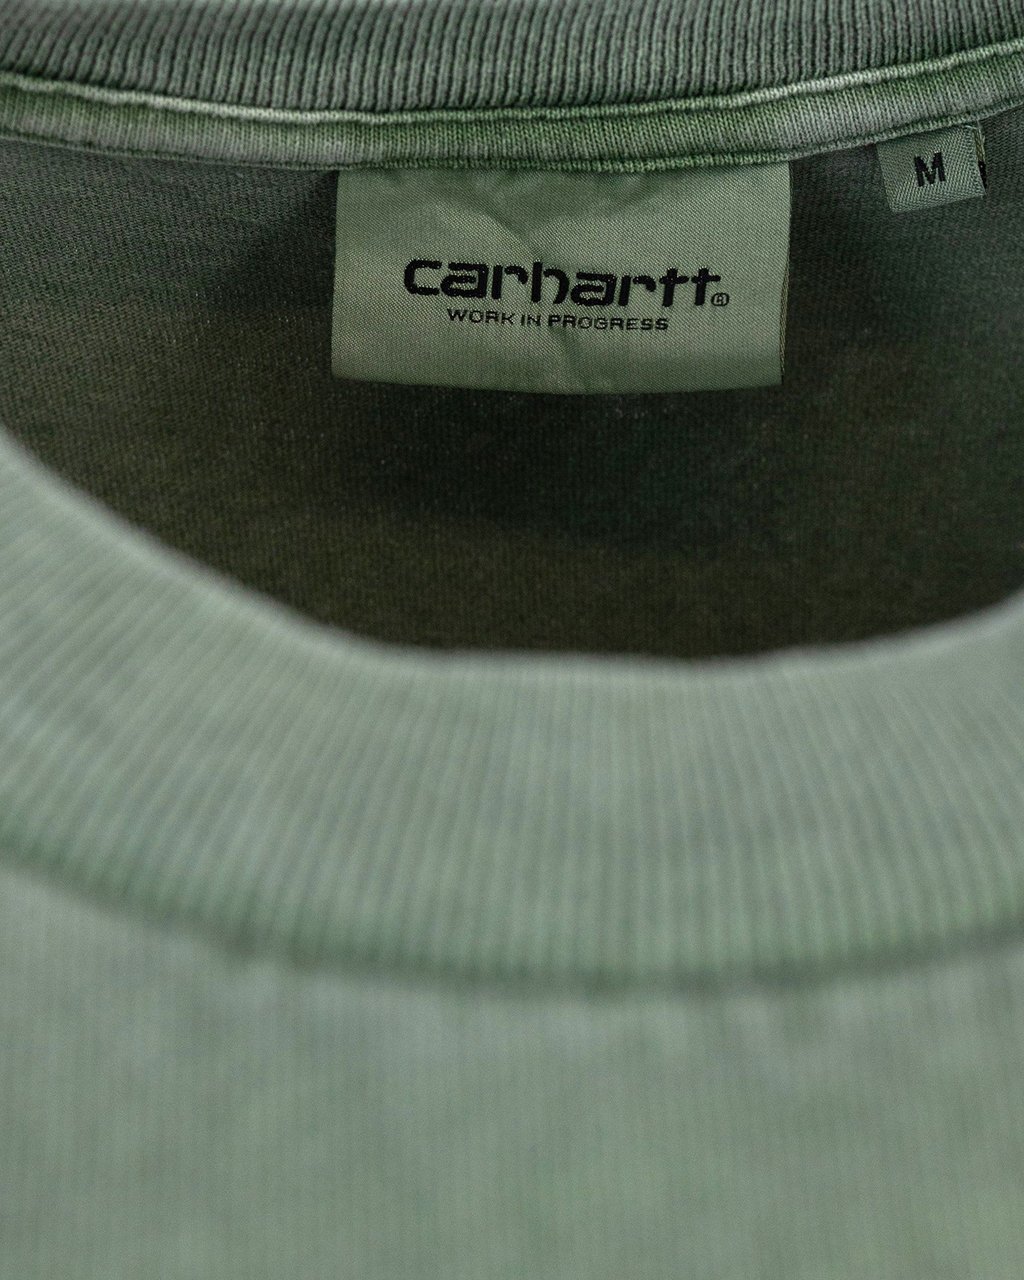 Carhartt Wip S/s Duster Green T-shirt Green Groen